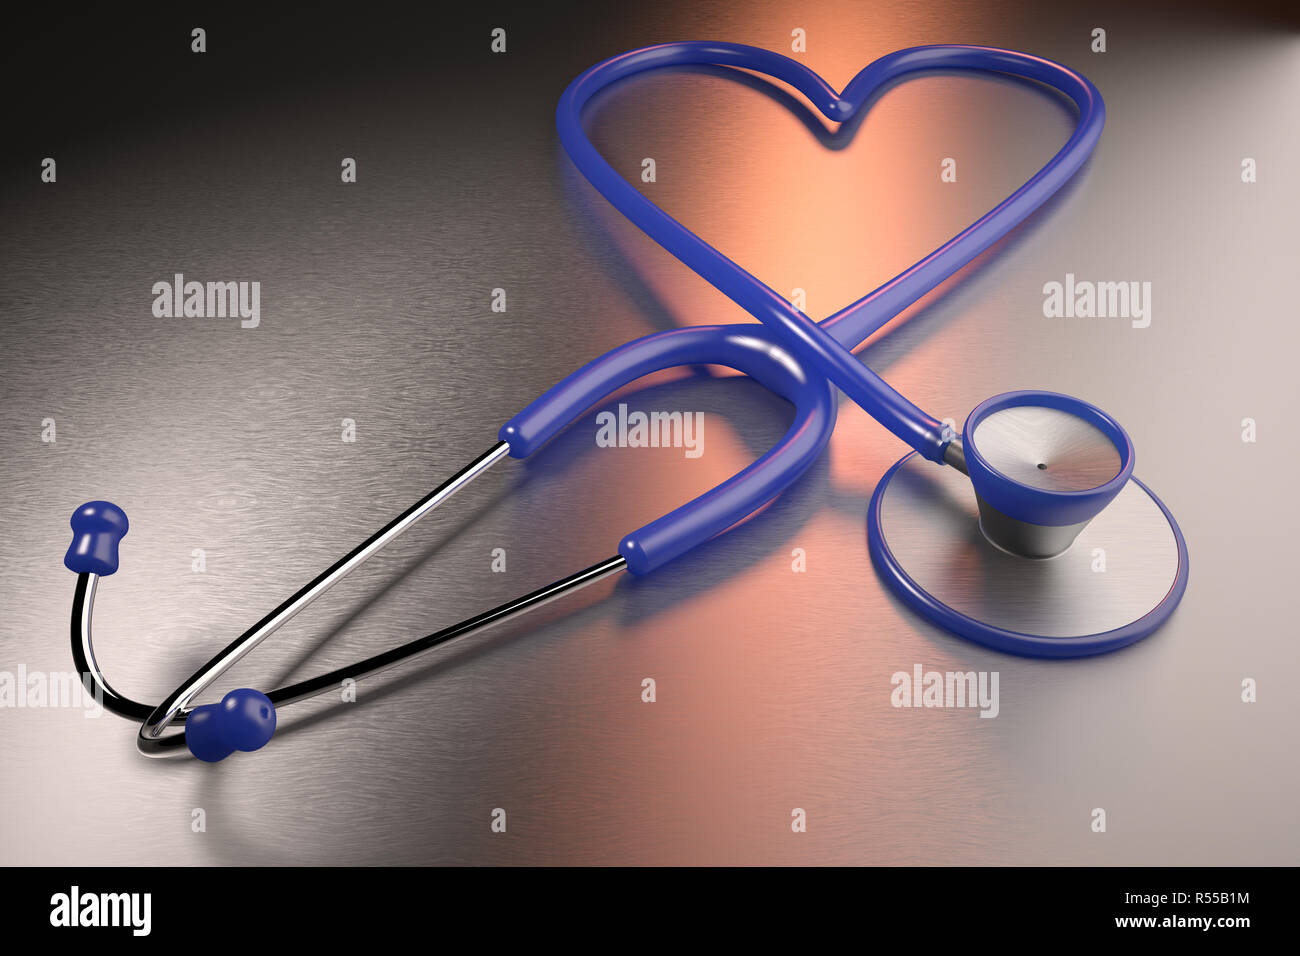 3D-Rendering von einem Herzen Gesundheit Konzept mit einem Herzförmigen Stethoskop vertreten Stockfoto